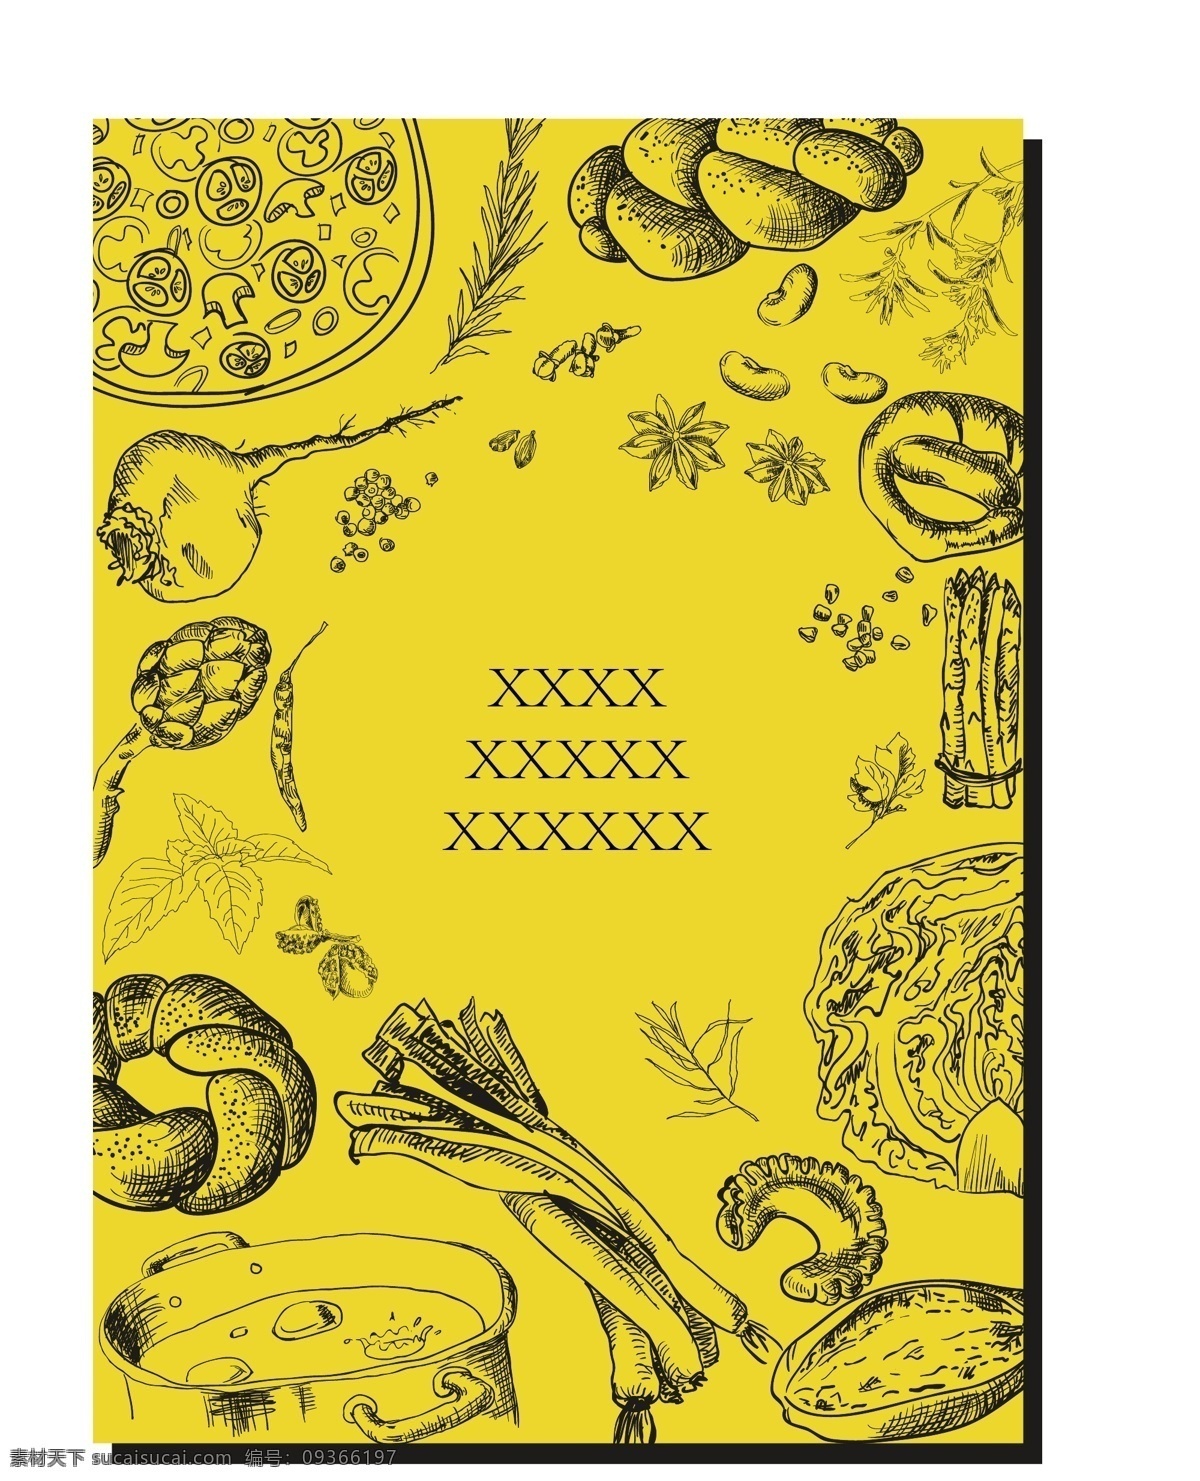 食材海报 食材 海报 厨房 食物 矢量 手绘 生活百科 餐饮美食